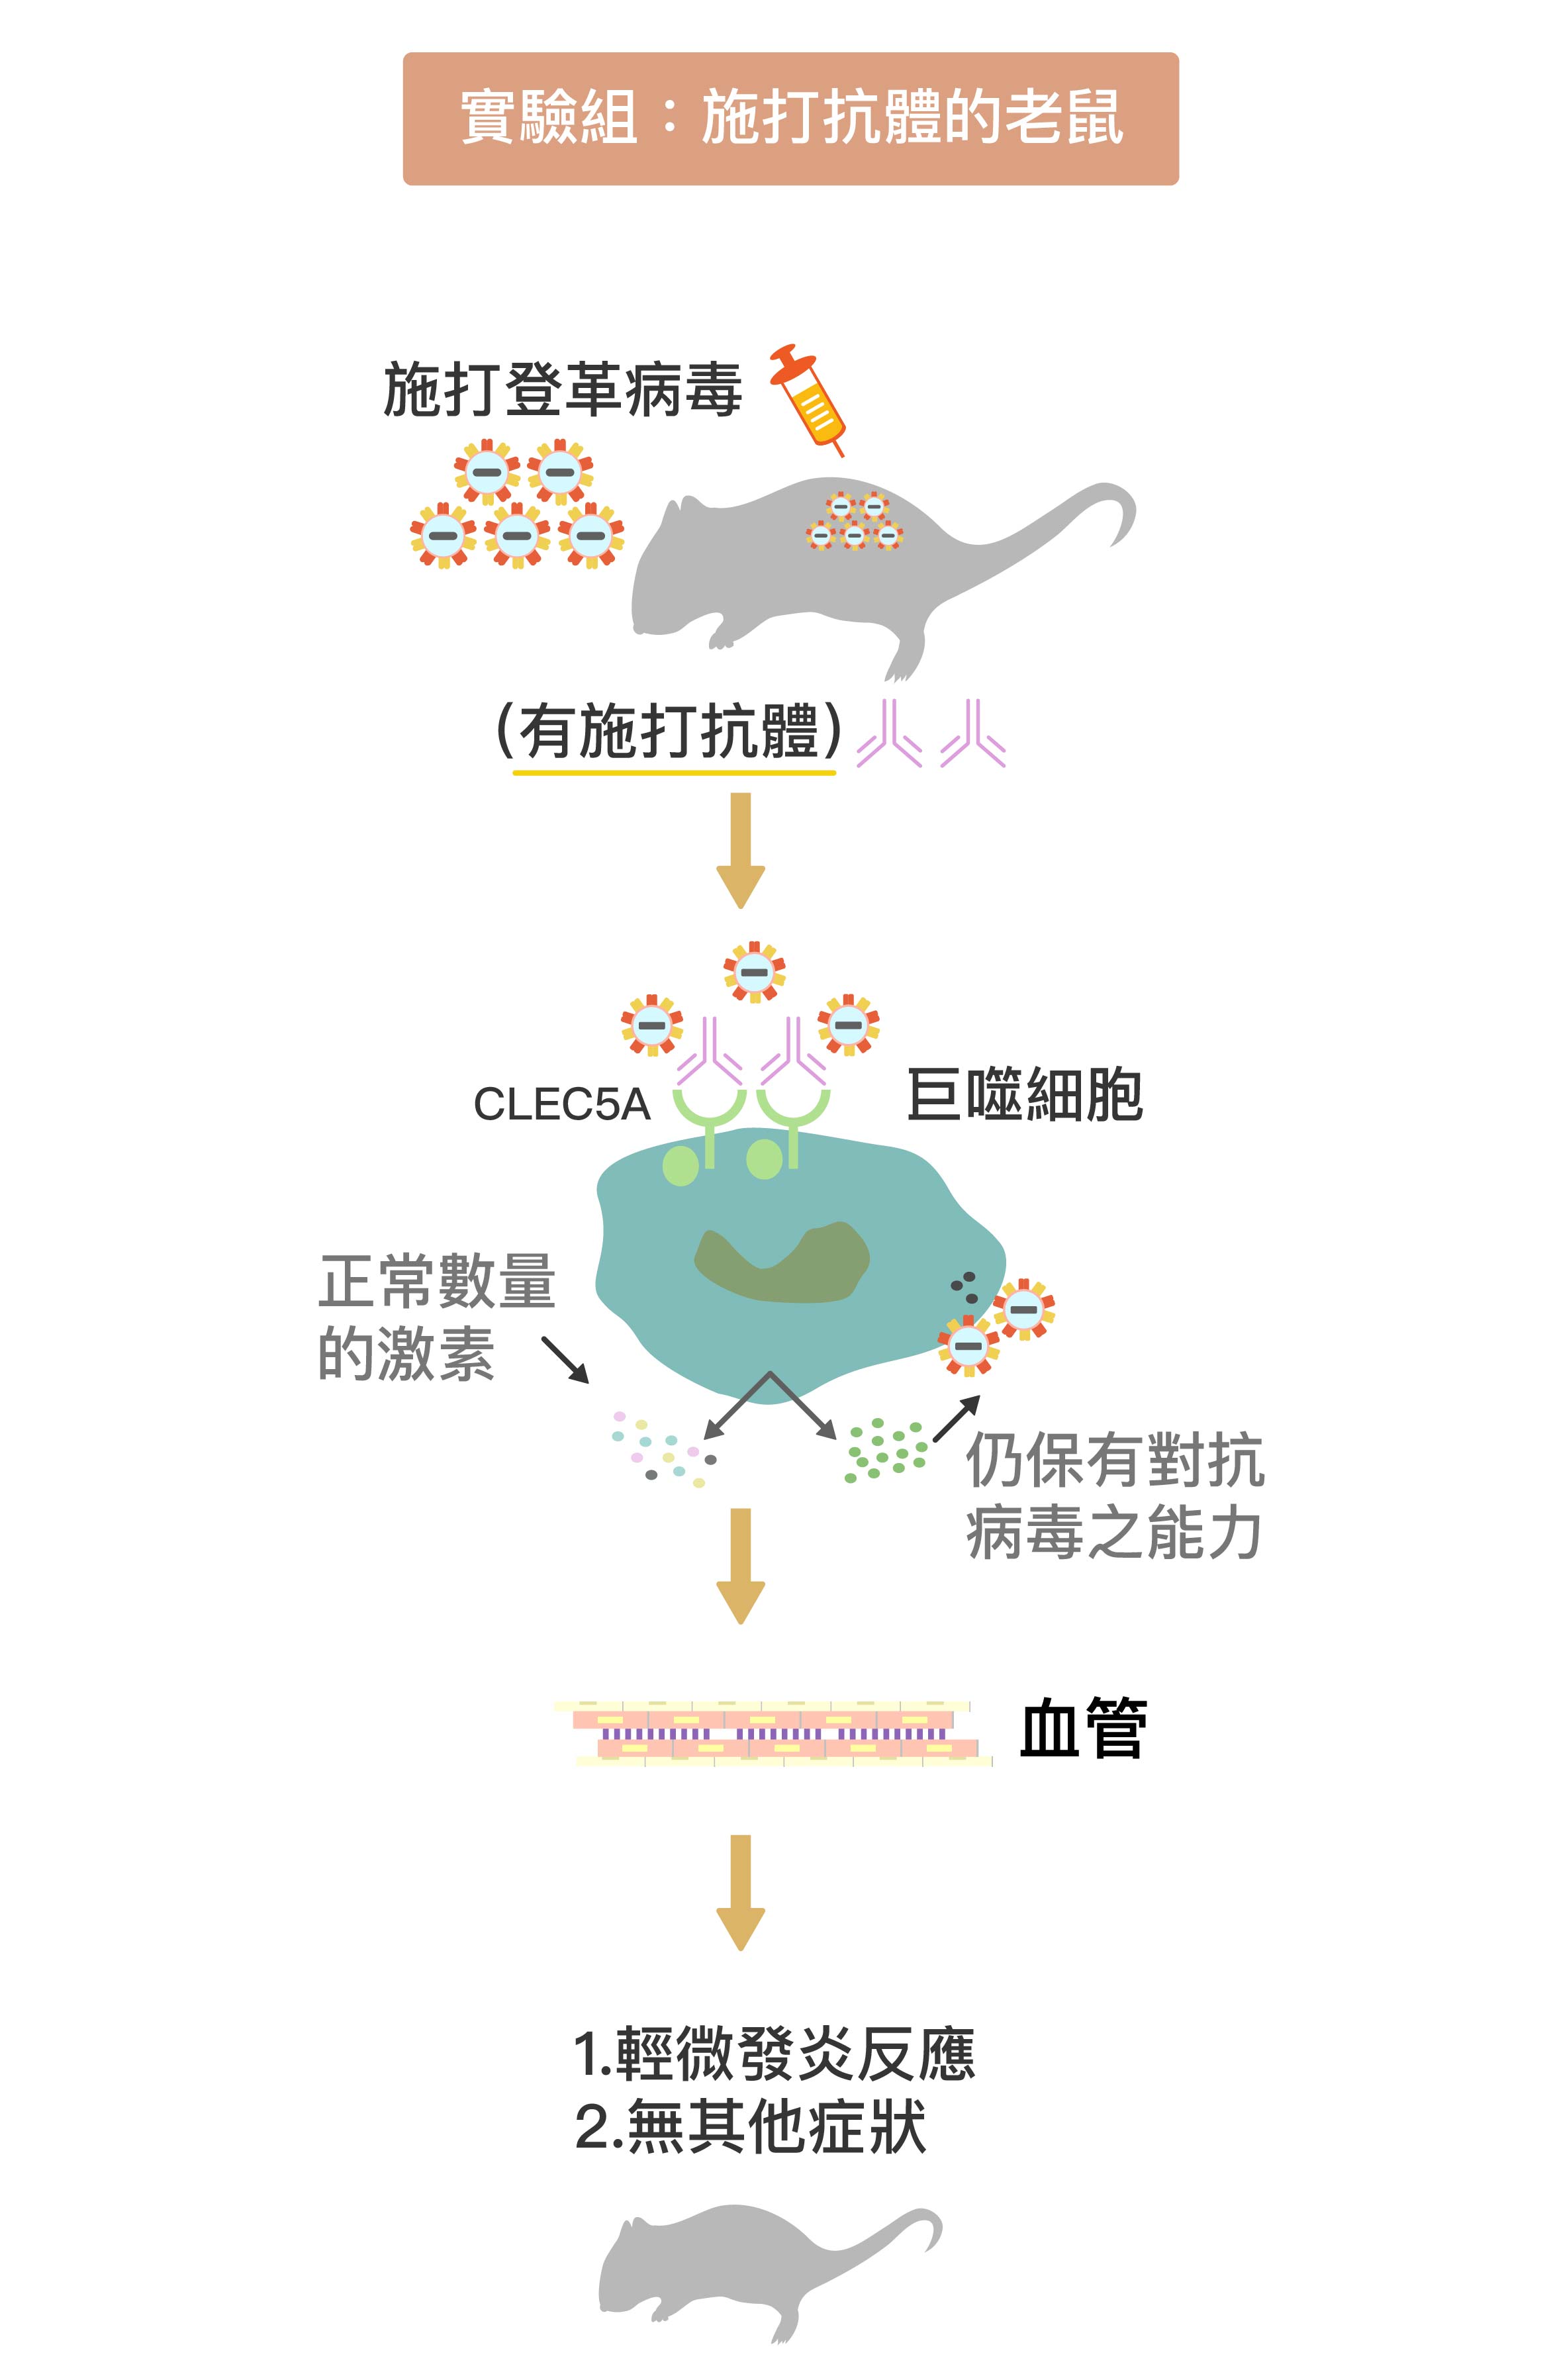 被施打 CLEC5A 拮抗性抗體 (圖中粉紫色抗體)後，巨噬細胞上的 CLEC5A 受器被抗體佔據，不會與登革病毒結合。巨噬細胞因此不會產生過量細胞素、導致細胞素風暴，卻能持續產生干擾素消滅病毒。在抗體保護下，小鼠保持正常的血管通透性，不會產生登革出血熱症狀。圖│研之有物 (資料來源│謝世良)